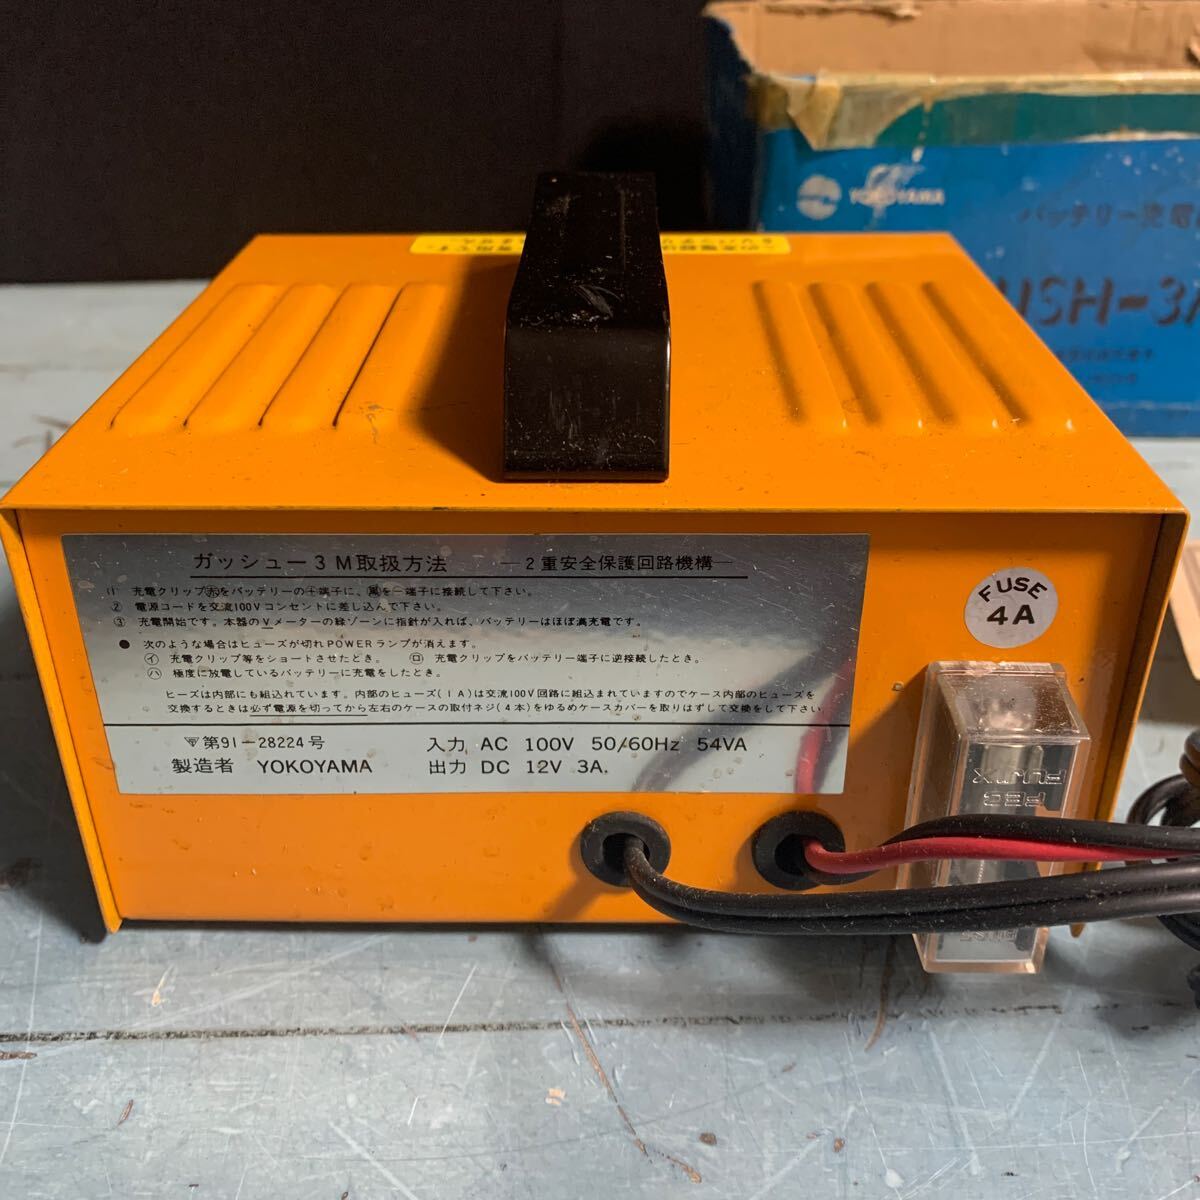 バッテリー充電器 GUSH-3M ガッシュー3M バッテリー充電器 メーター付き 2重安全保護回路 バッテリーチャージャー 充電器 (9423)の画像3